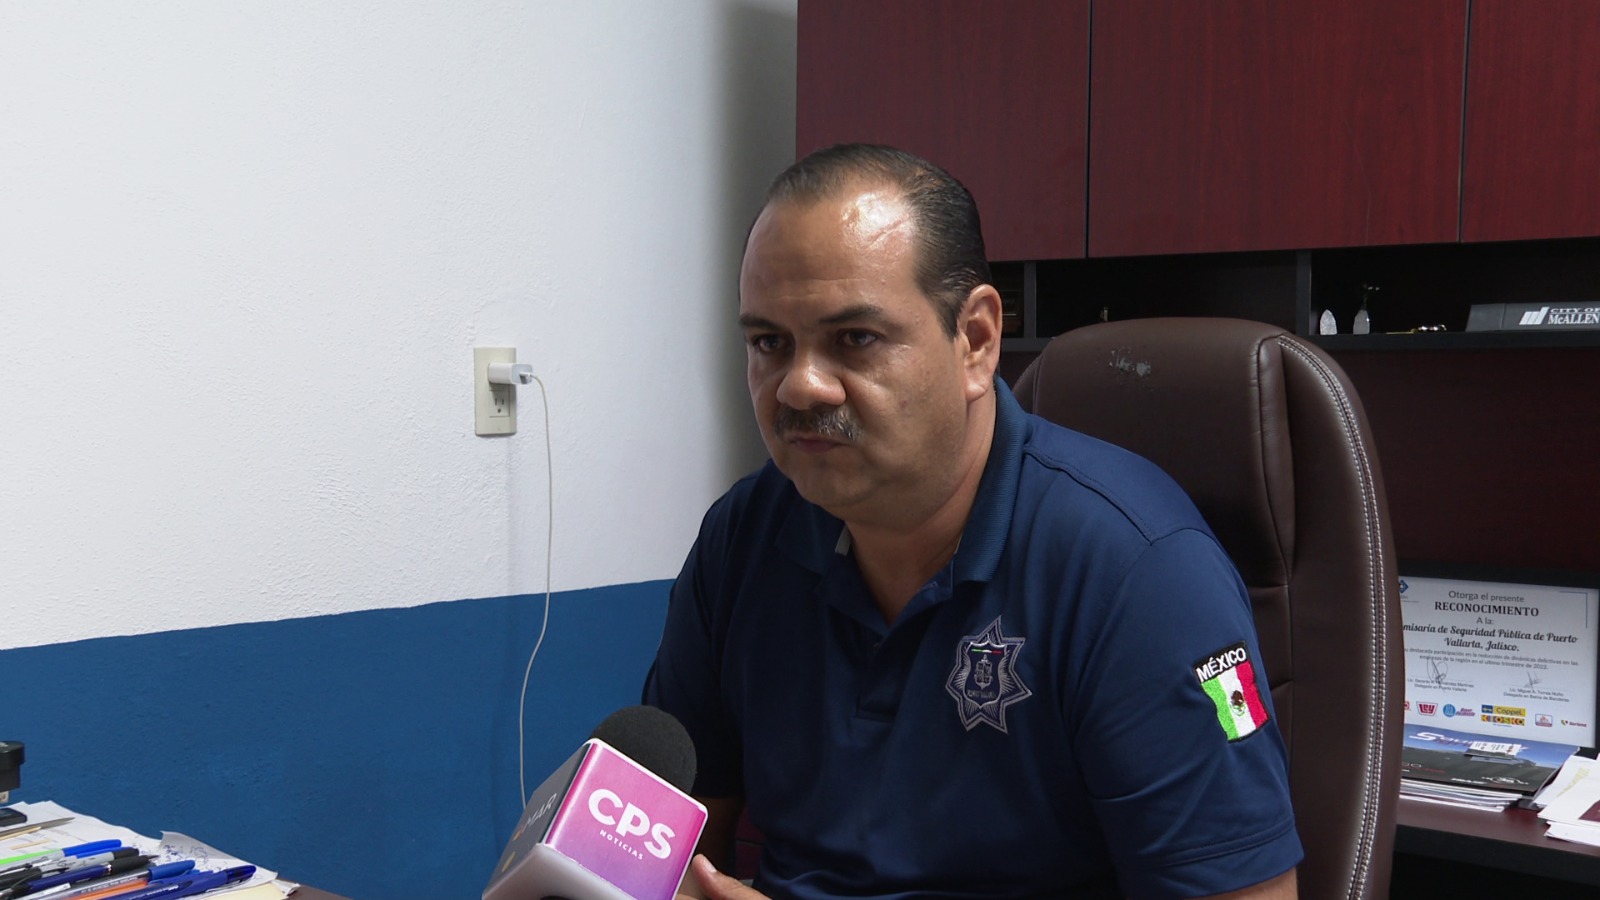 El comisario Rigoberto Flores Parra